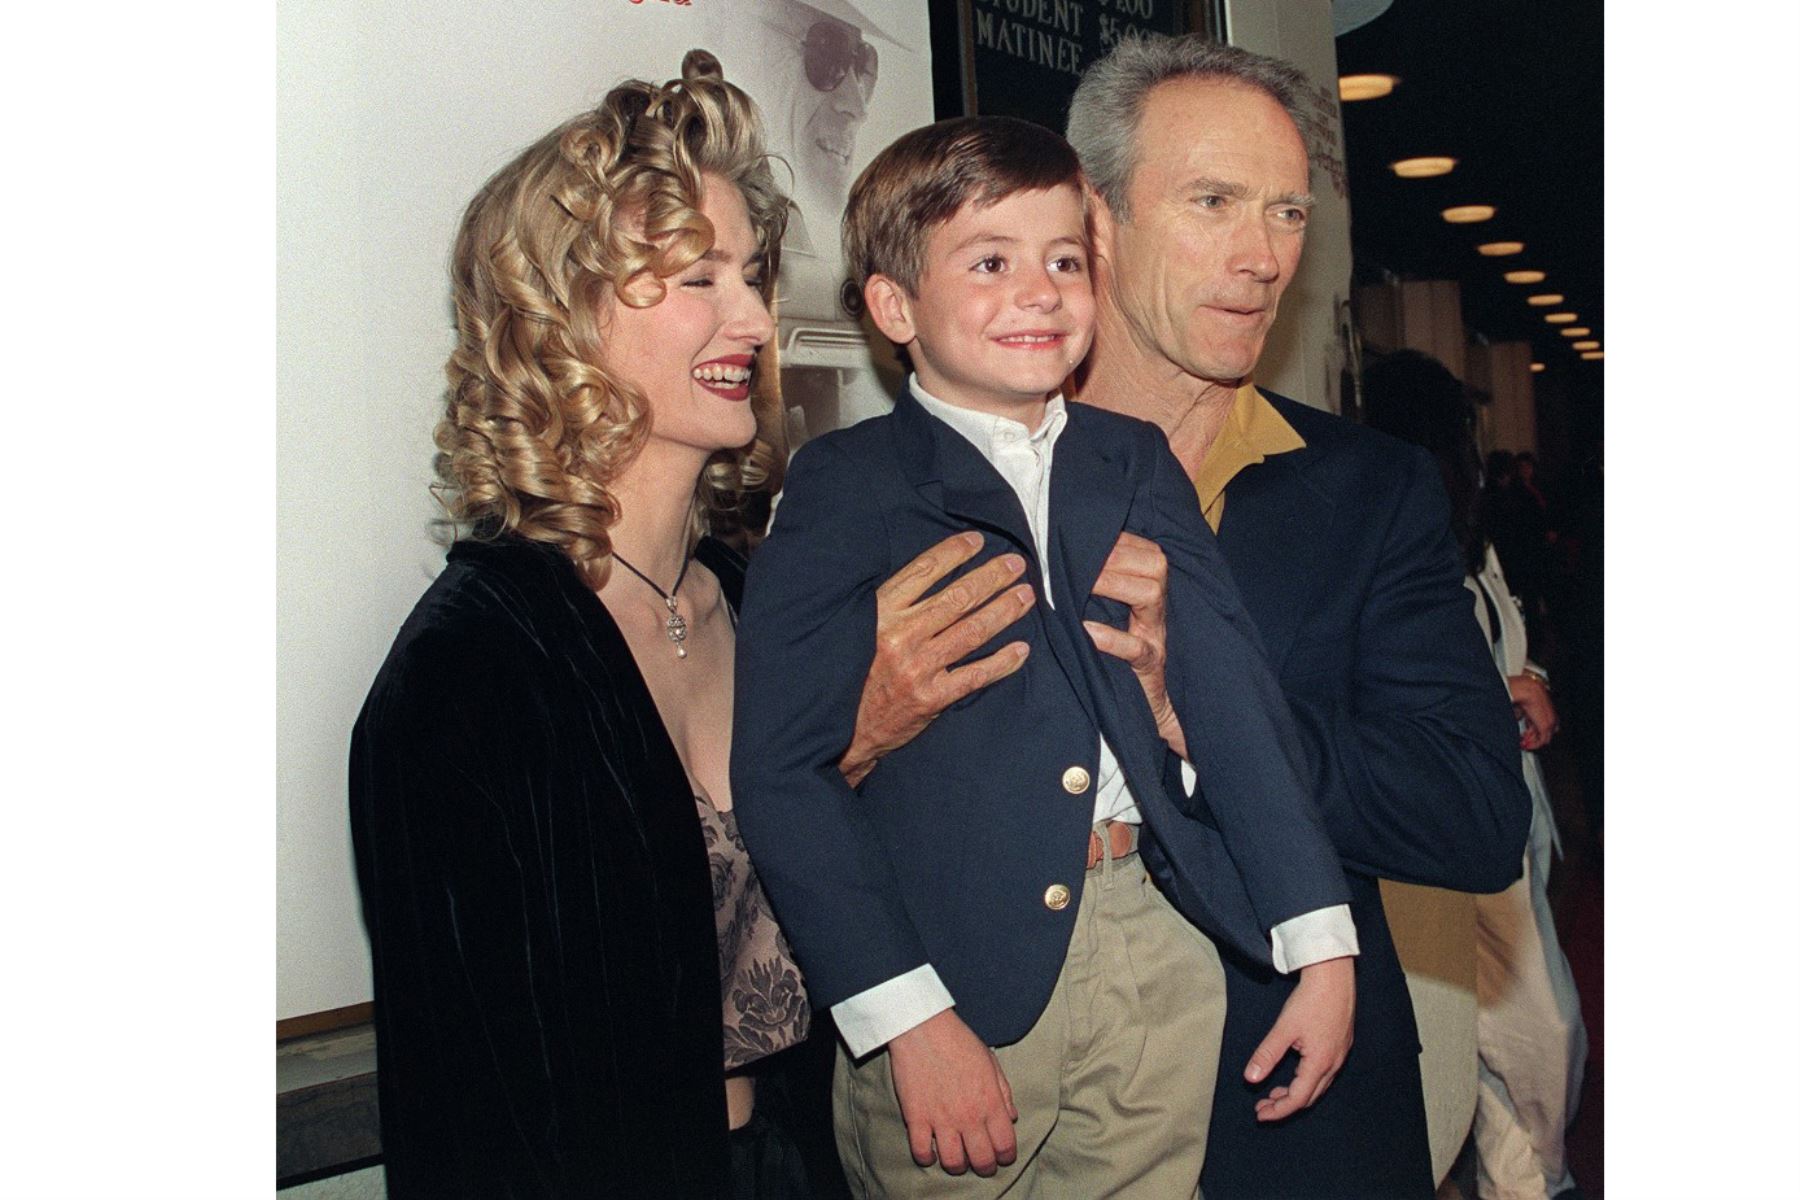 El actor y director de cine estadounidense Clint Eastwood (R) posa con TJ Lowther, de ocho años, y la actriz Laura Dern cuando llegan, el 15 de noviembre de 1993, a Westwood, para el estreno de su película "Un mundo perfecto". Foto: AFP